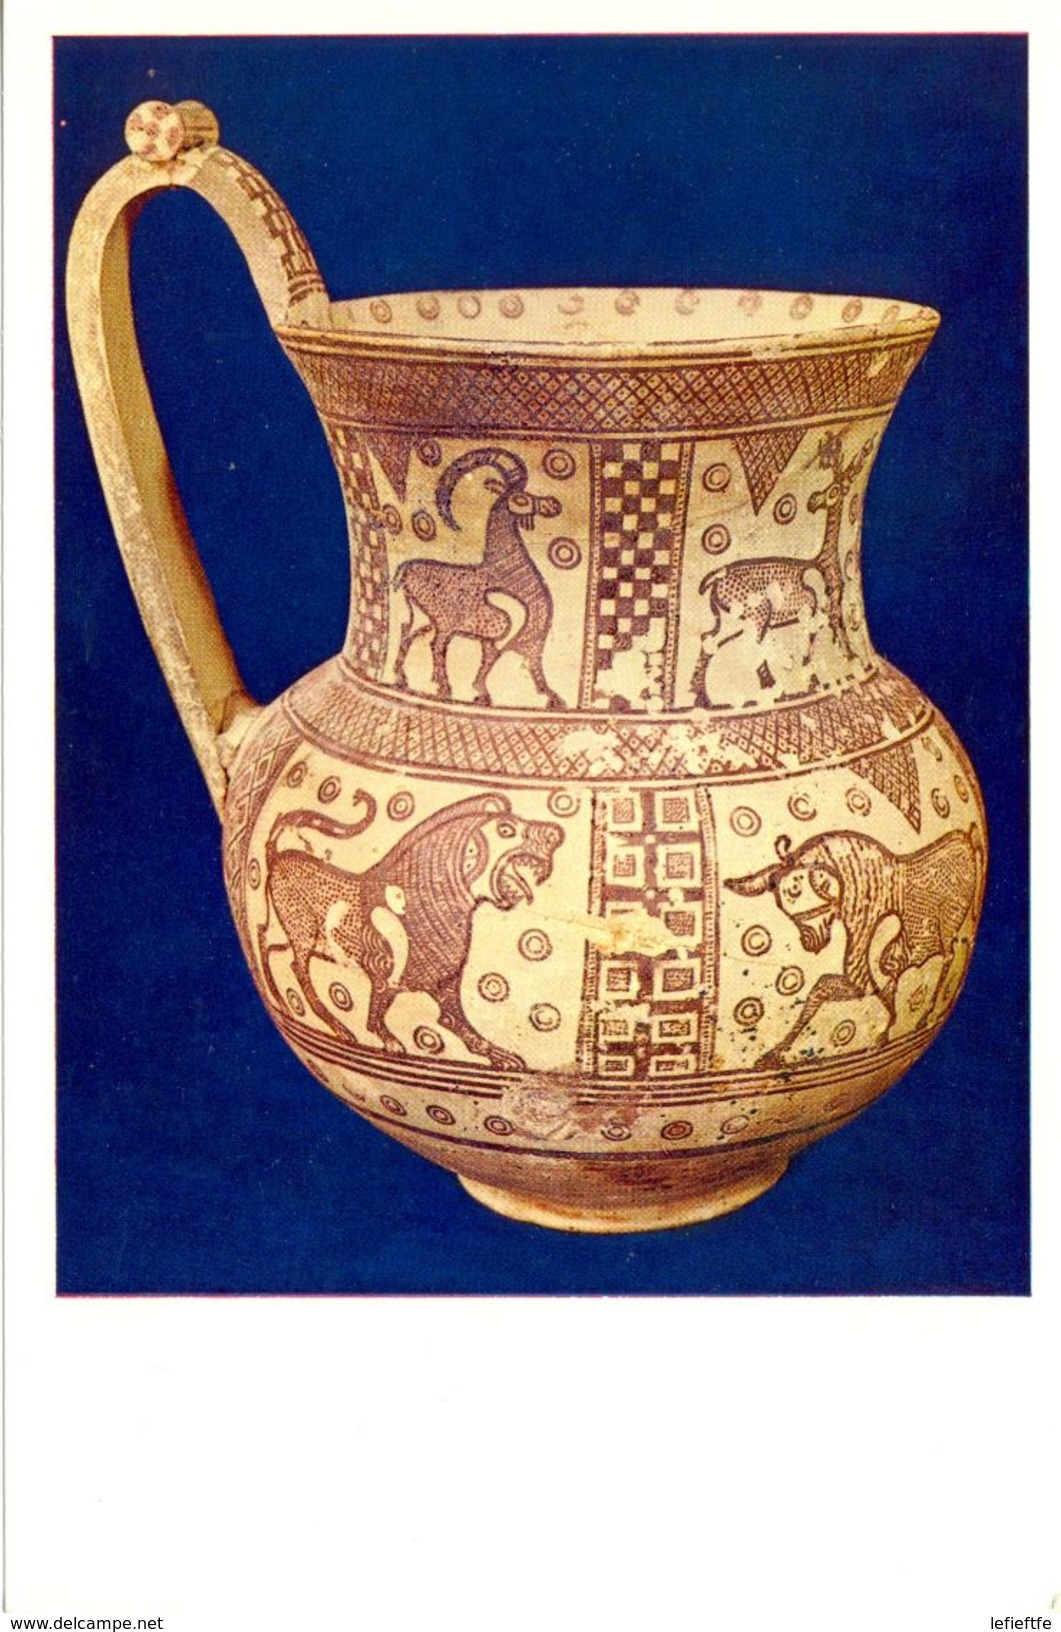 Turquie - Musée Archéologique D'Ankara - Série 14 - Cruche à Anse Plate VIIème Siècle Av JC - - Turquie